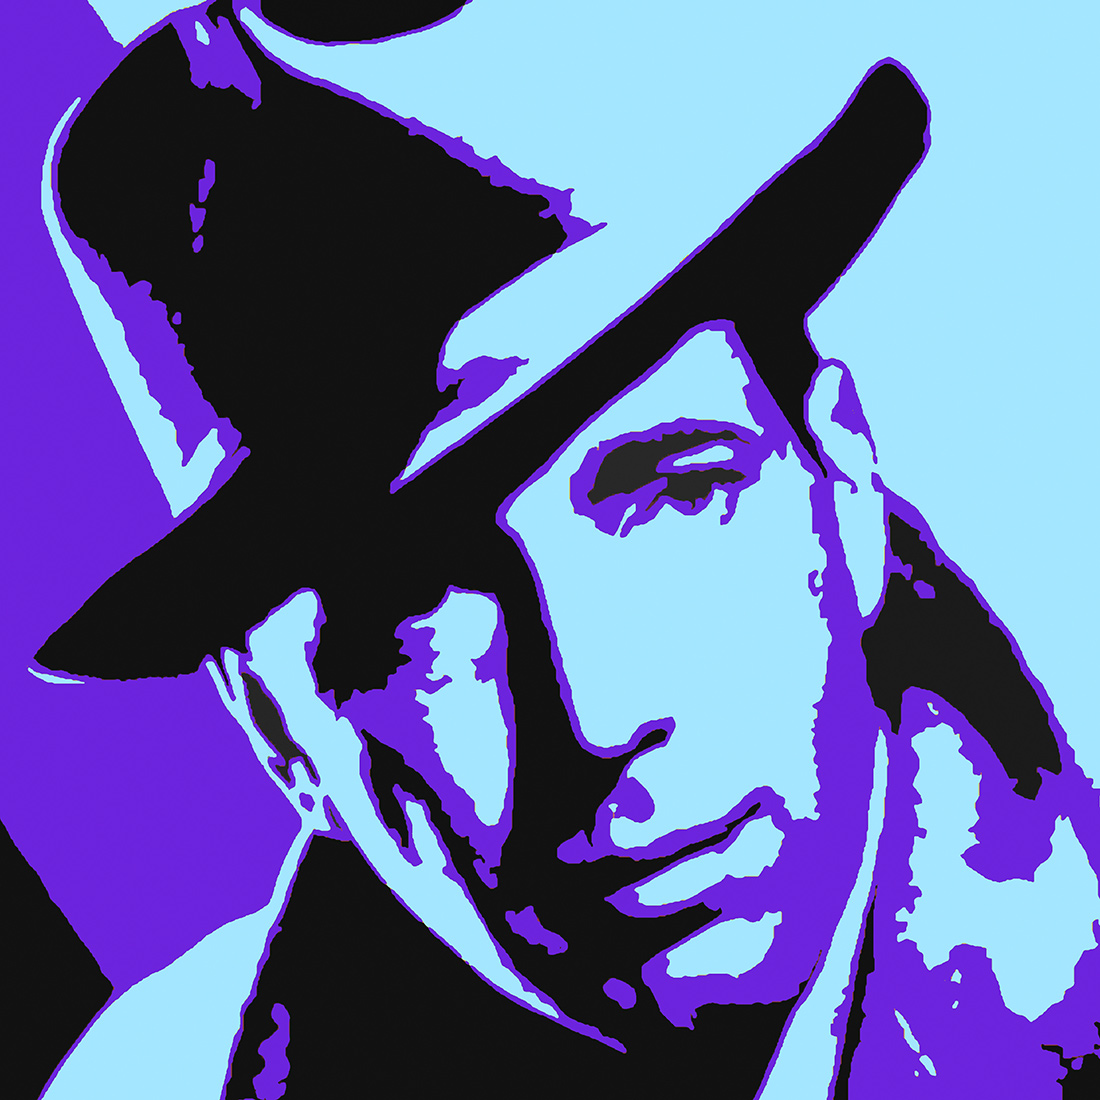 Quadro Blue Bogart